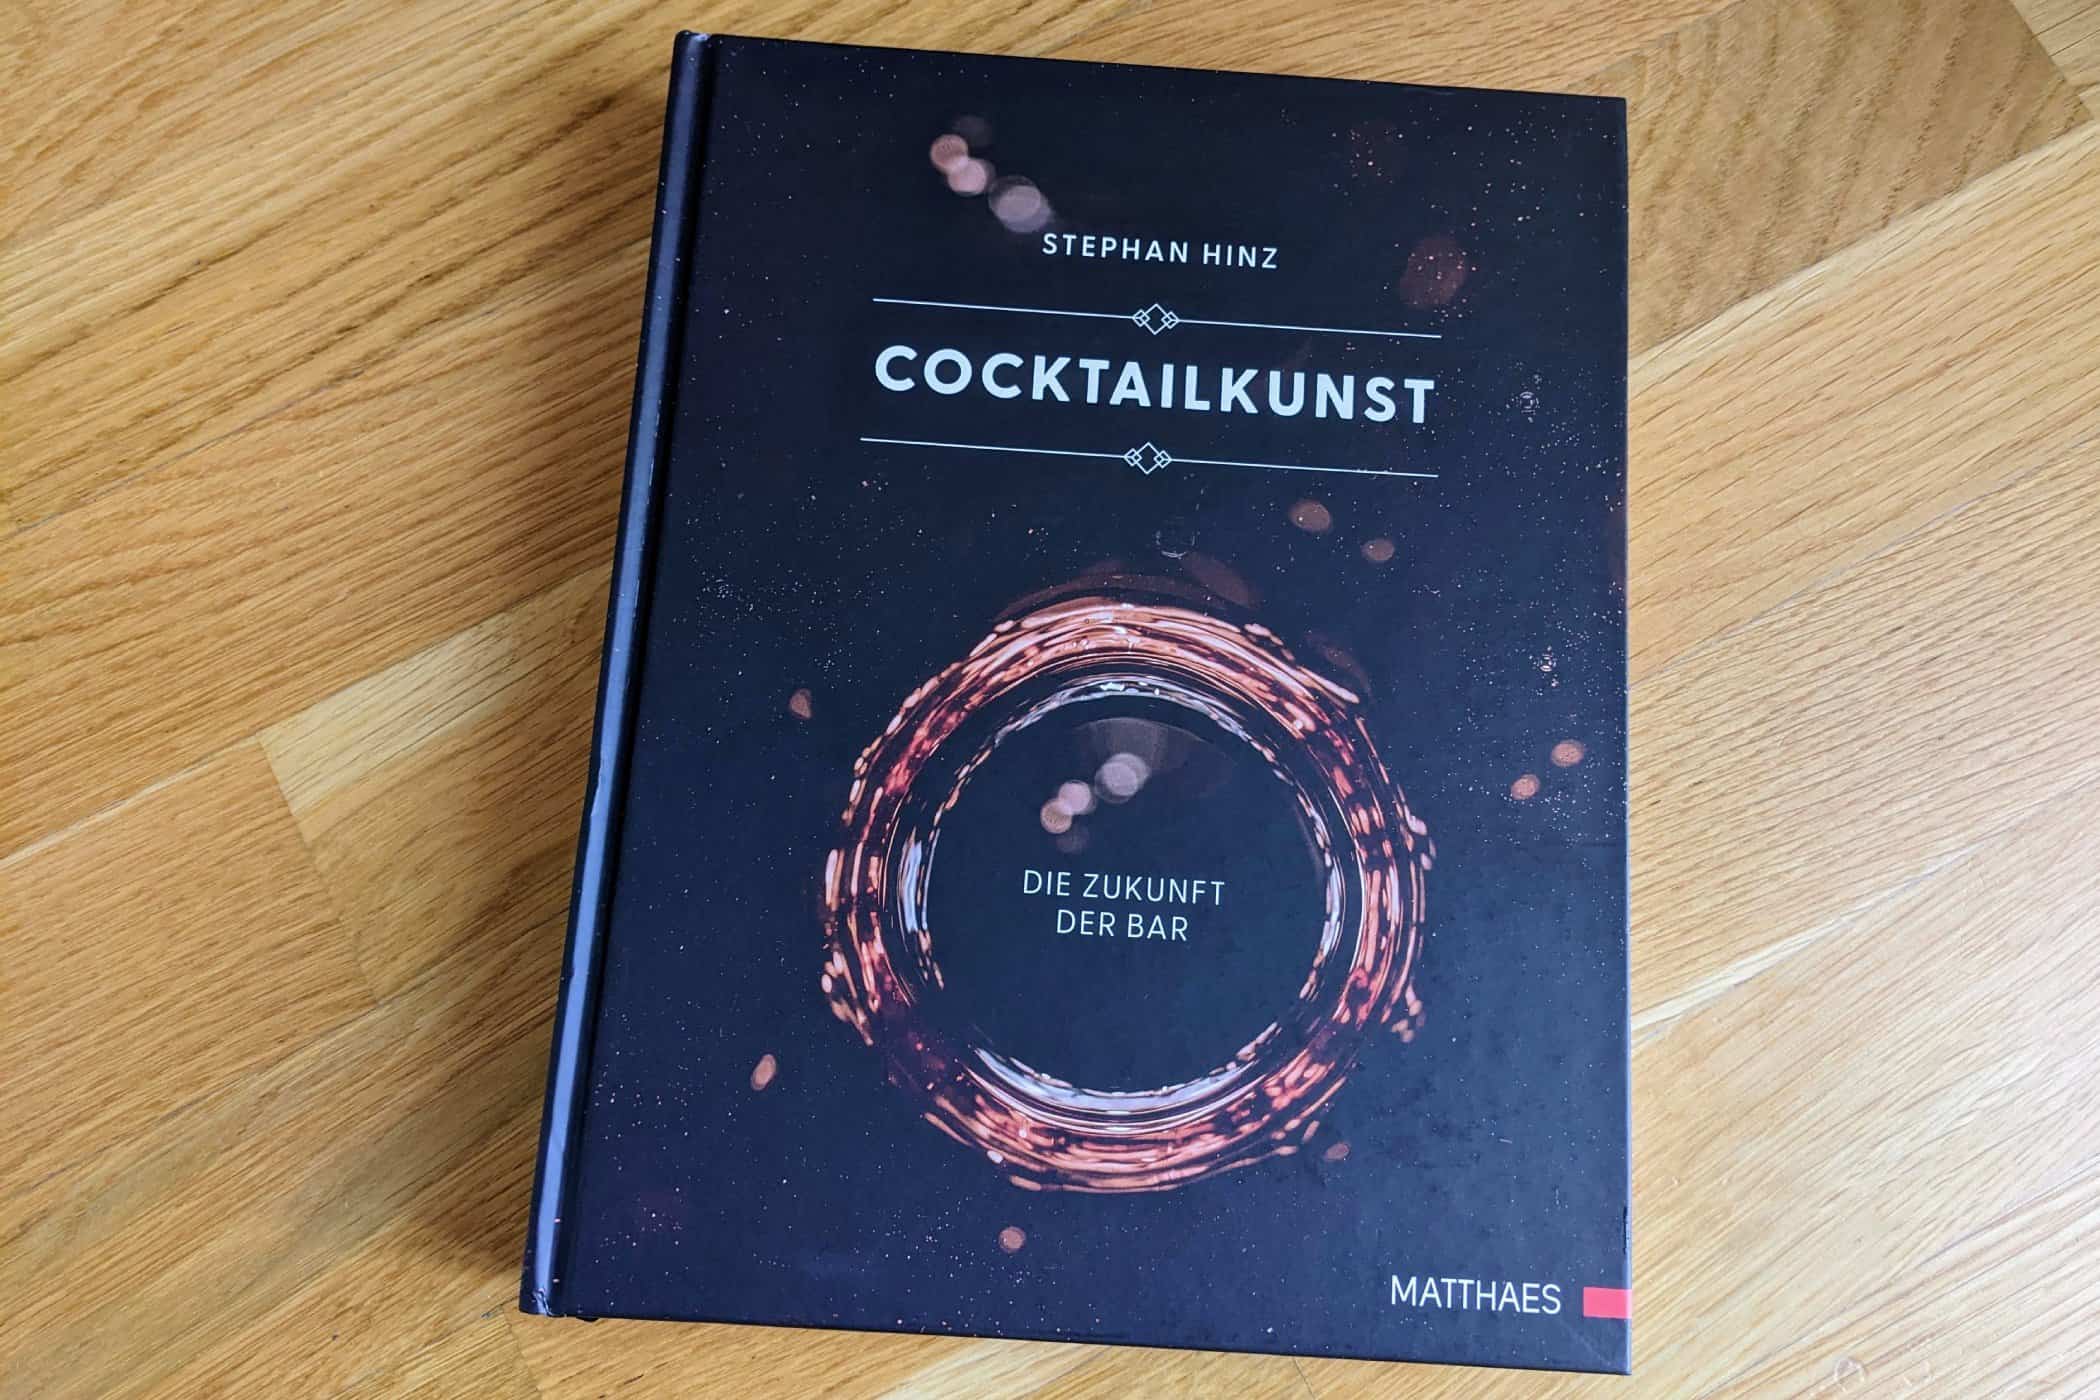 PXL 20221114 081900269 - medien-tools, getraenke, gastronomie Wir verlosen ein Exemplar der Neuauflage „Cocktailkunst – die Zukunft der Bar“